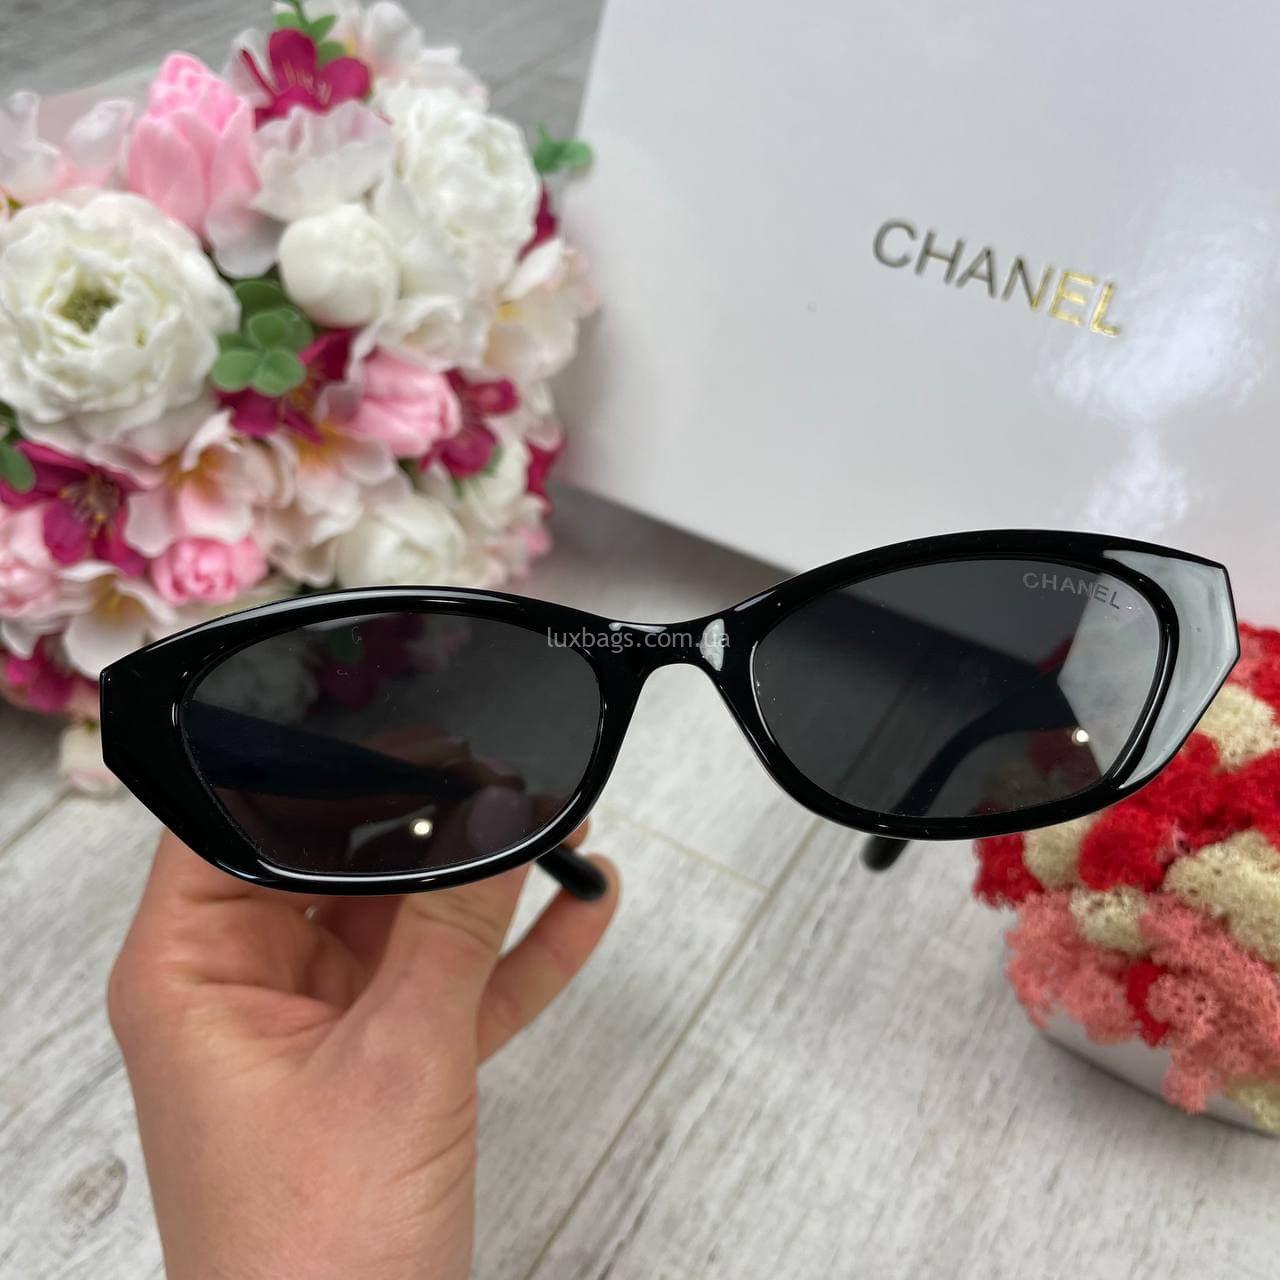 Женские очки Chane1 солнцезащитные c поляризацией Купить на lux